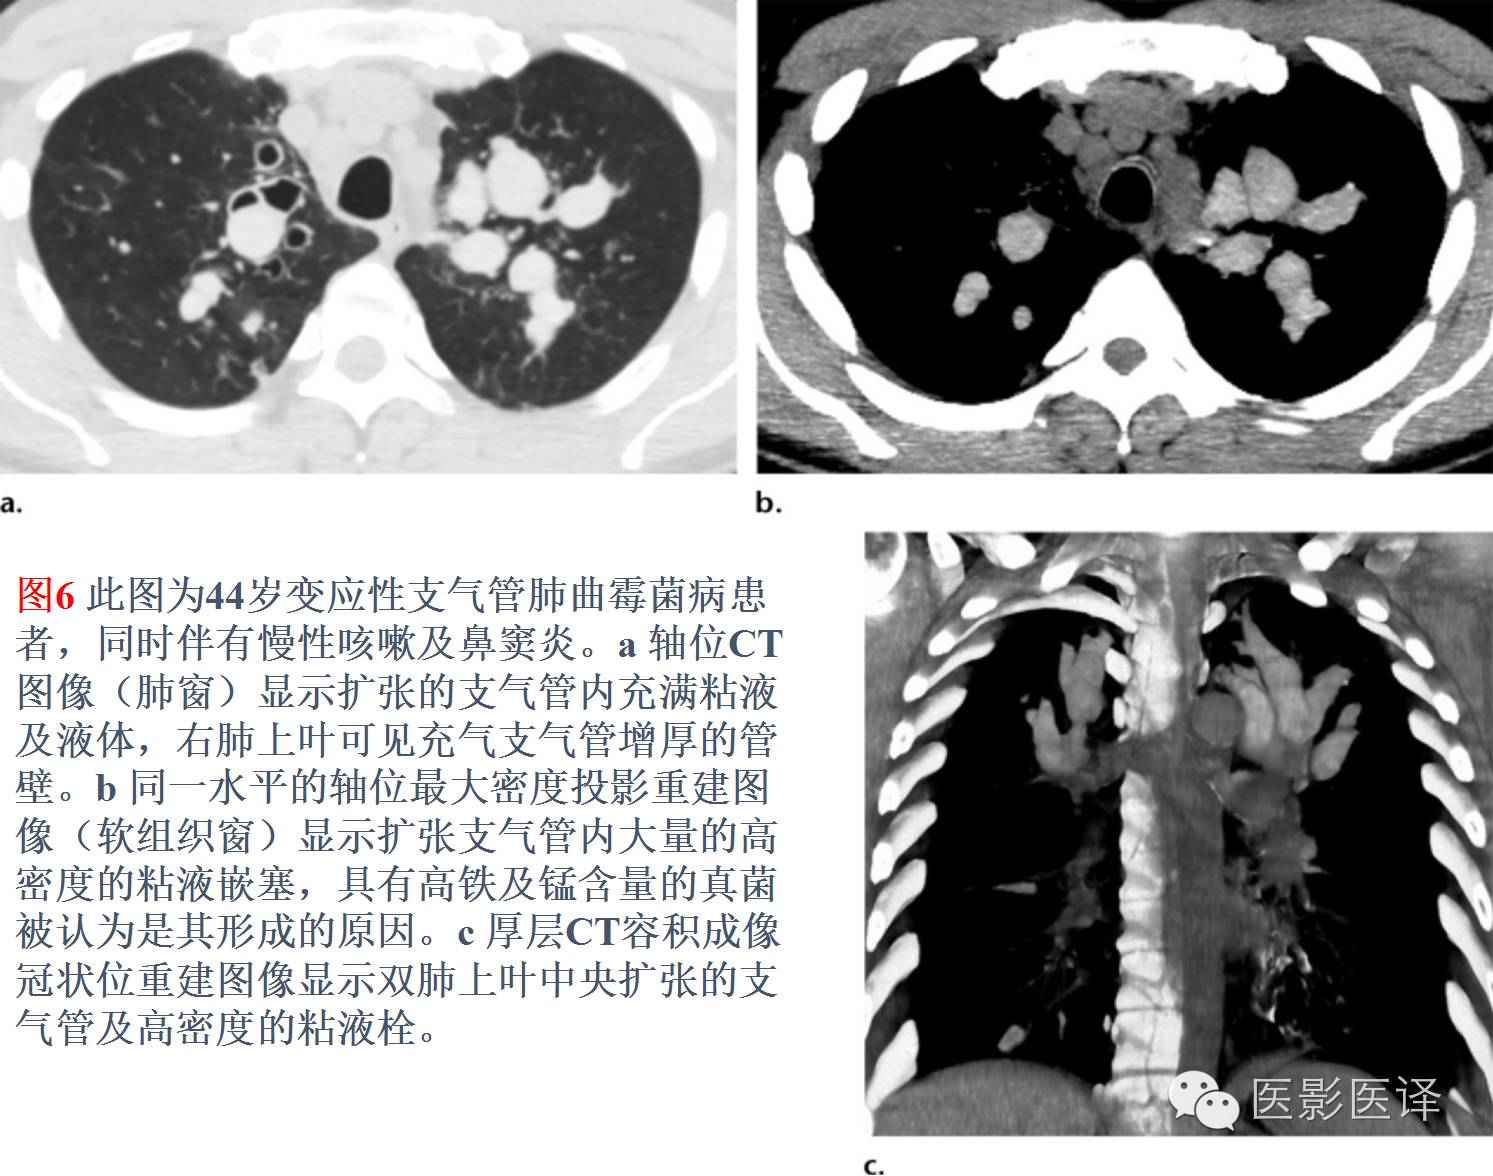 支气管扩张可发生在原发性肺结核之后,往往伴有其他征象,如肺门淋巴结